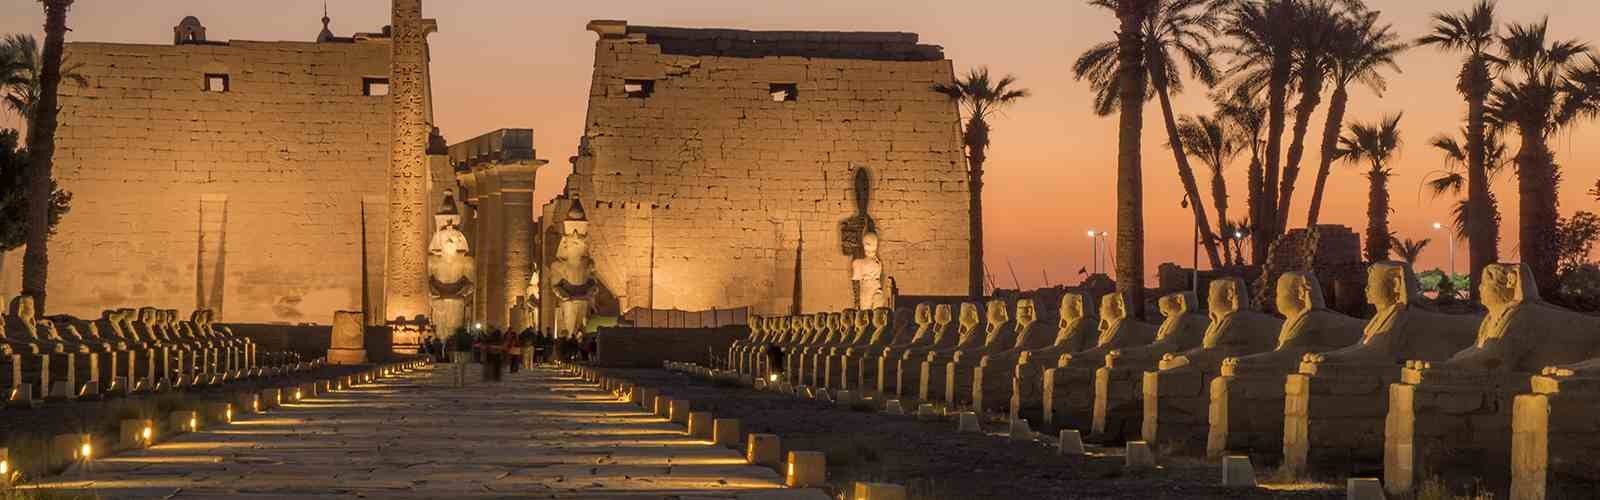 08 jours / 07 nuits Le Caire - Croisière sur le Nil (Assouan - Louxor) - Tour islamique du Caire